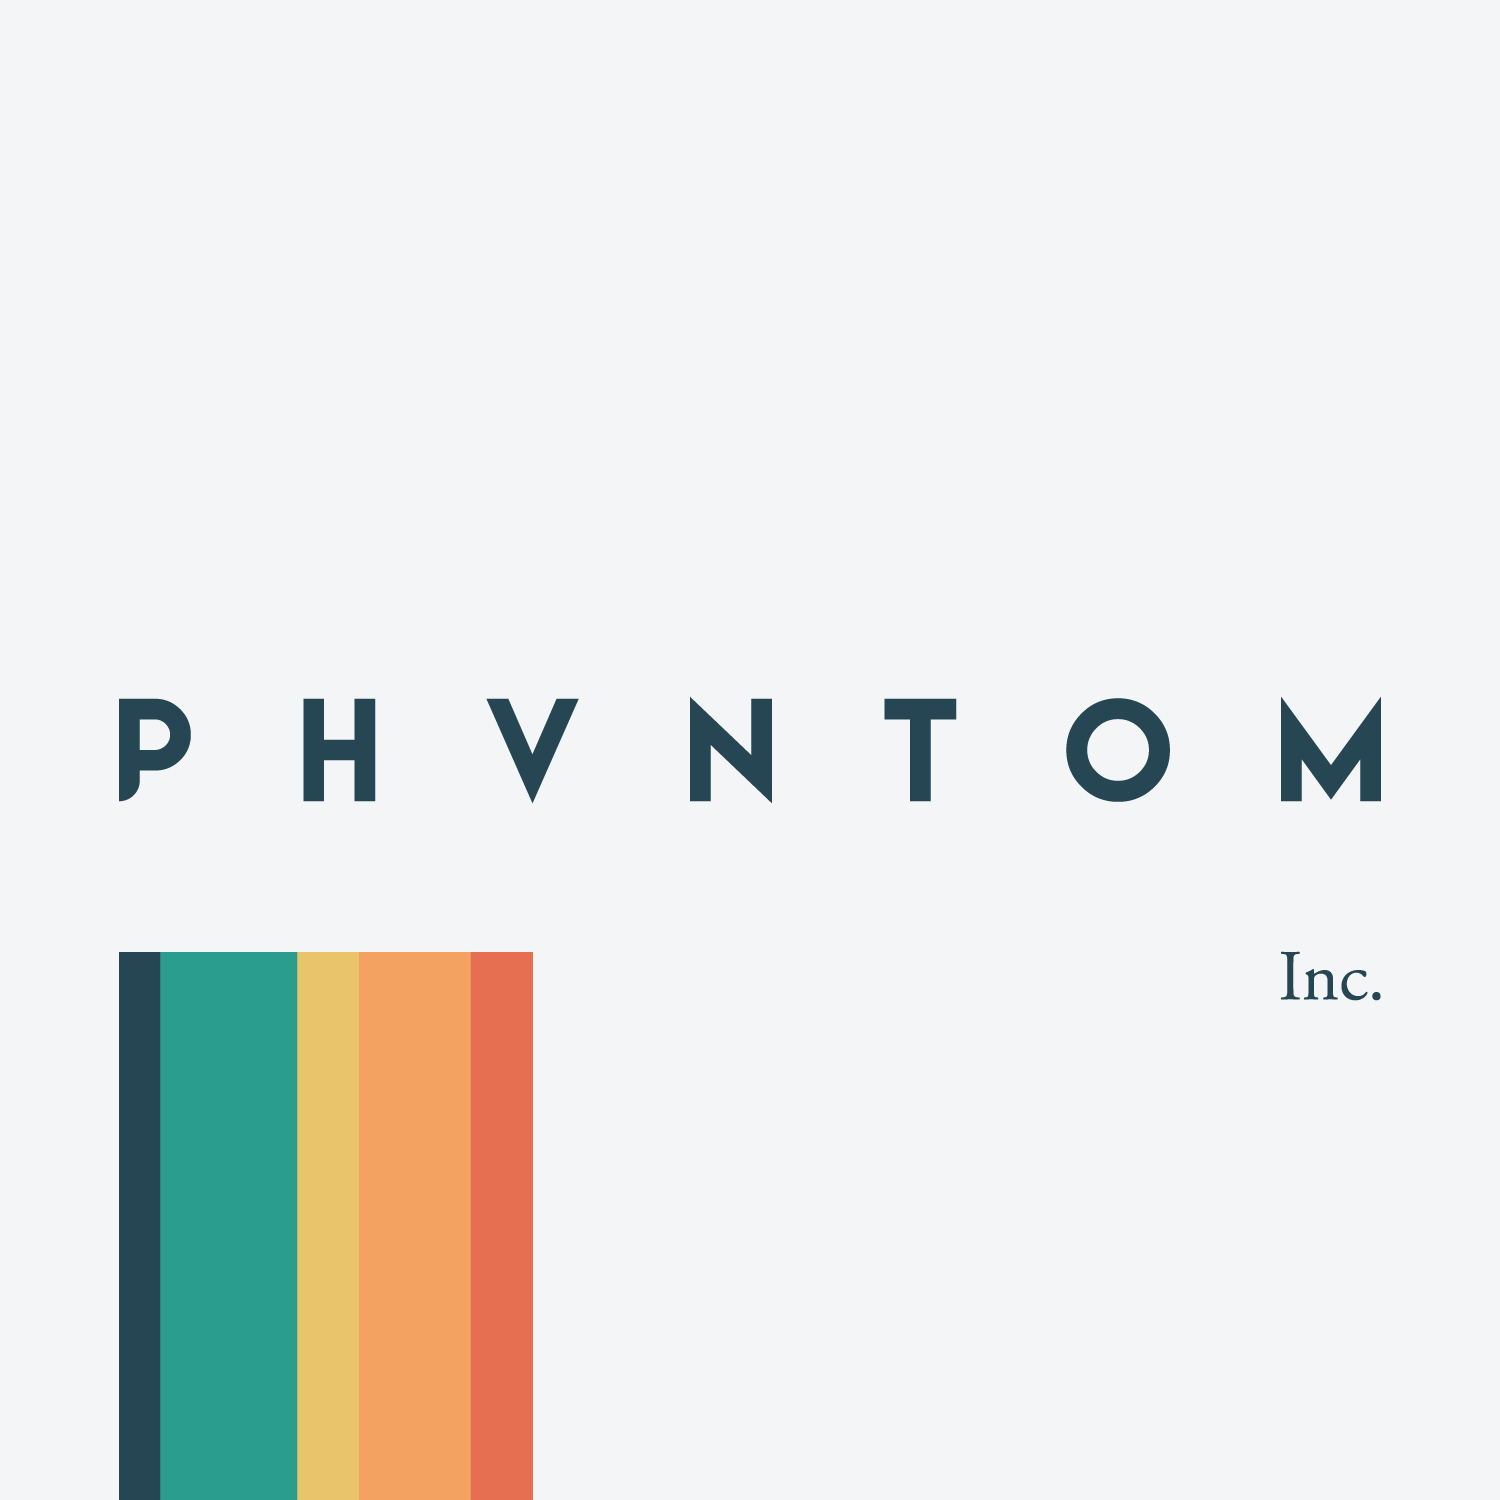 Business logo of Phvntom Inc.